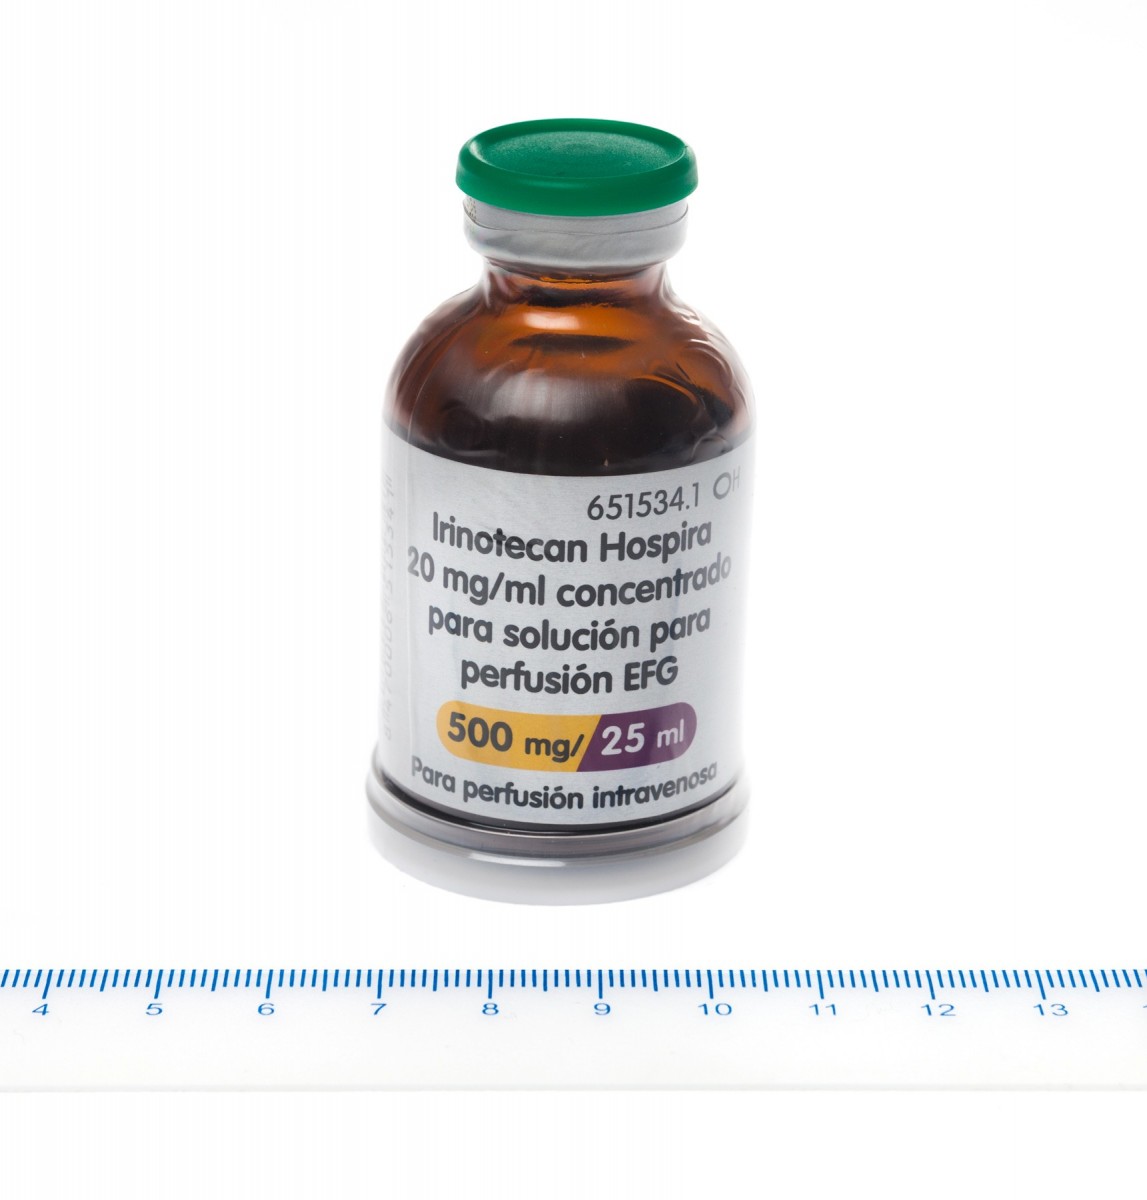 IRINOTECAN HOSPIRA 20 mg/ml CONCENTRADO PARA SOLUCION PARA  PERFUSION EFG , 1 vial de 25 ml fotografía de la forma farmacéutica.